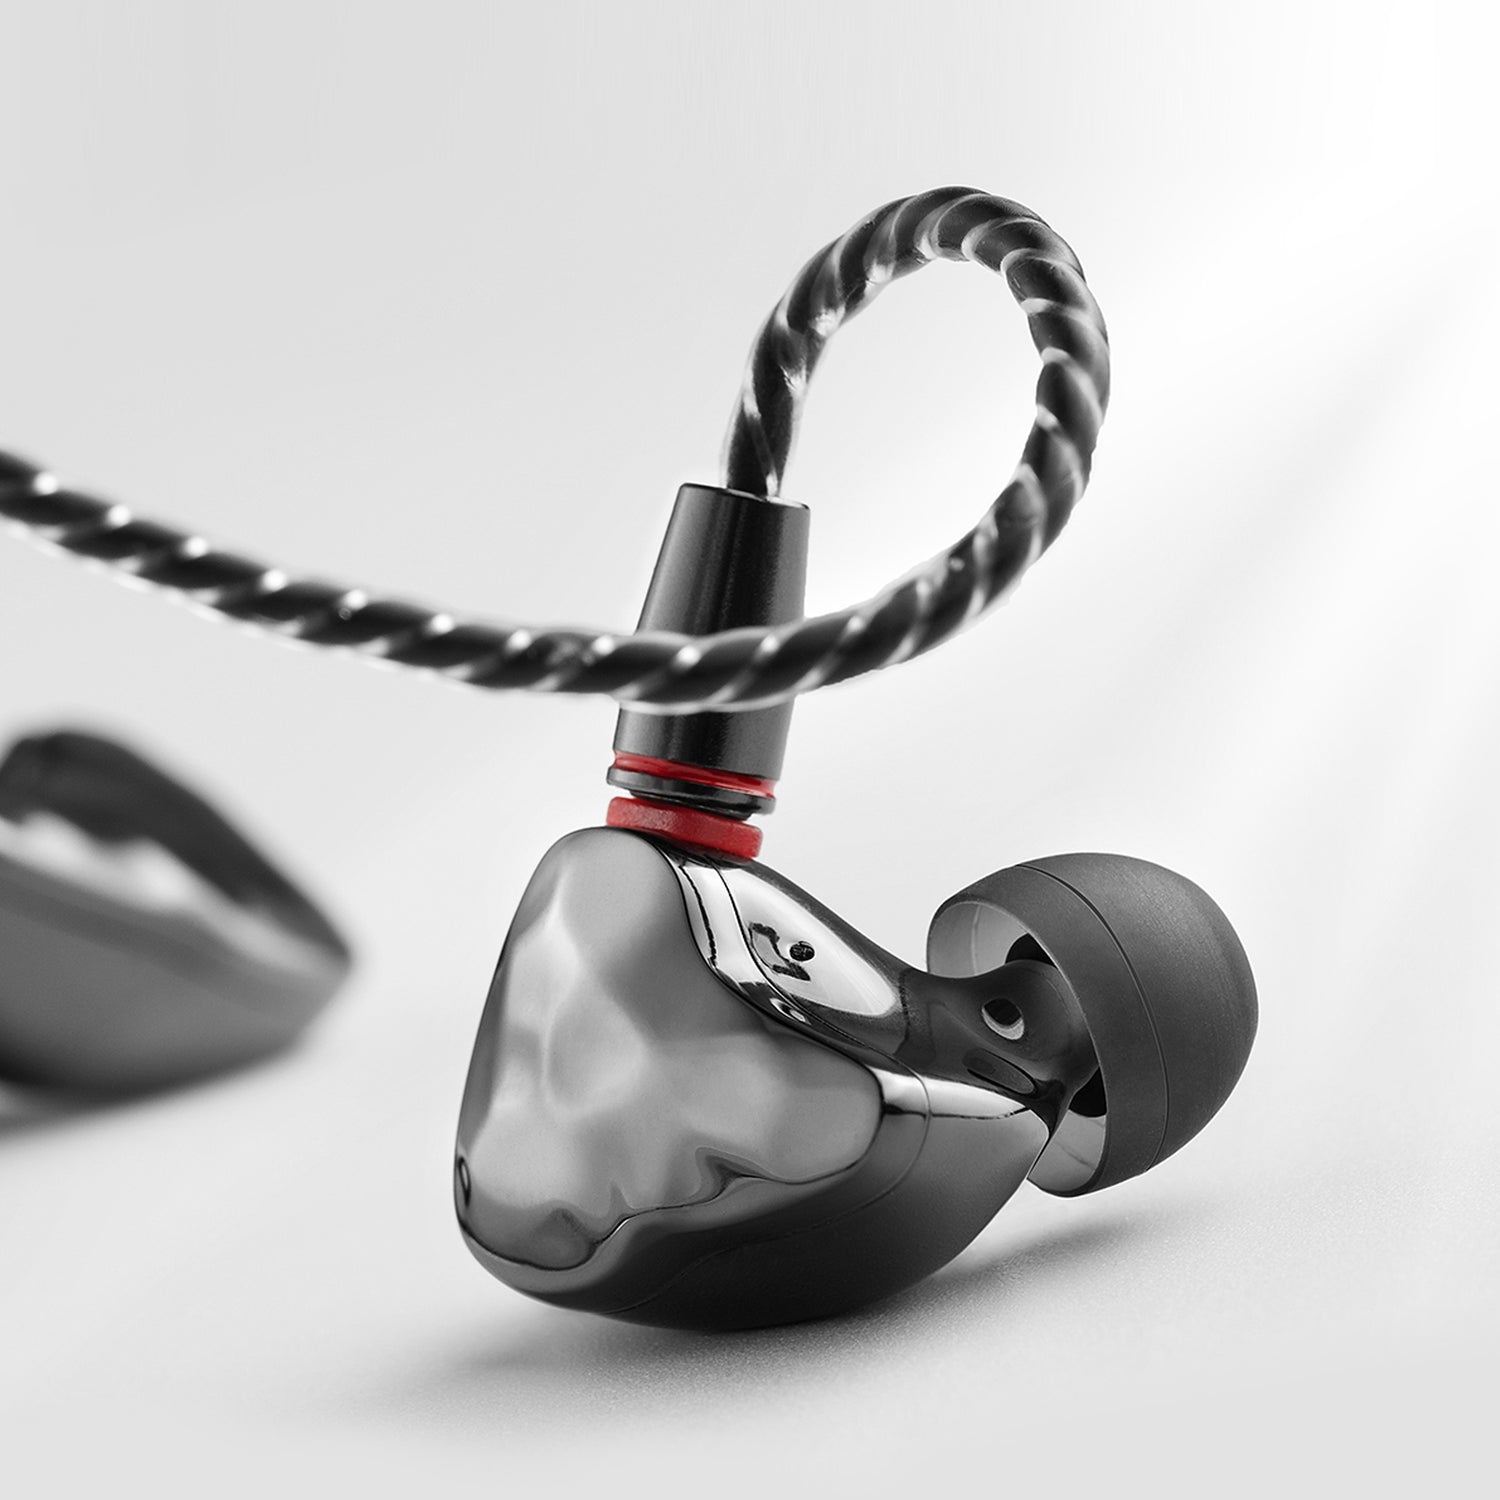 Ikko Obsidian OH10 In-Ear Monitors